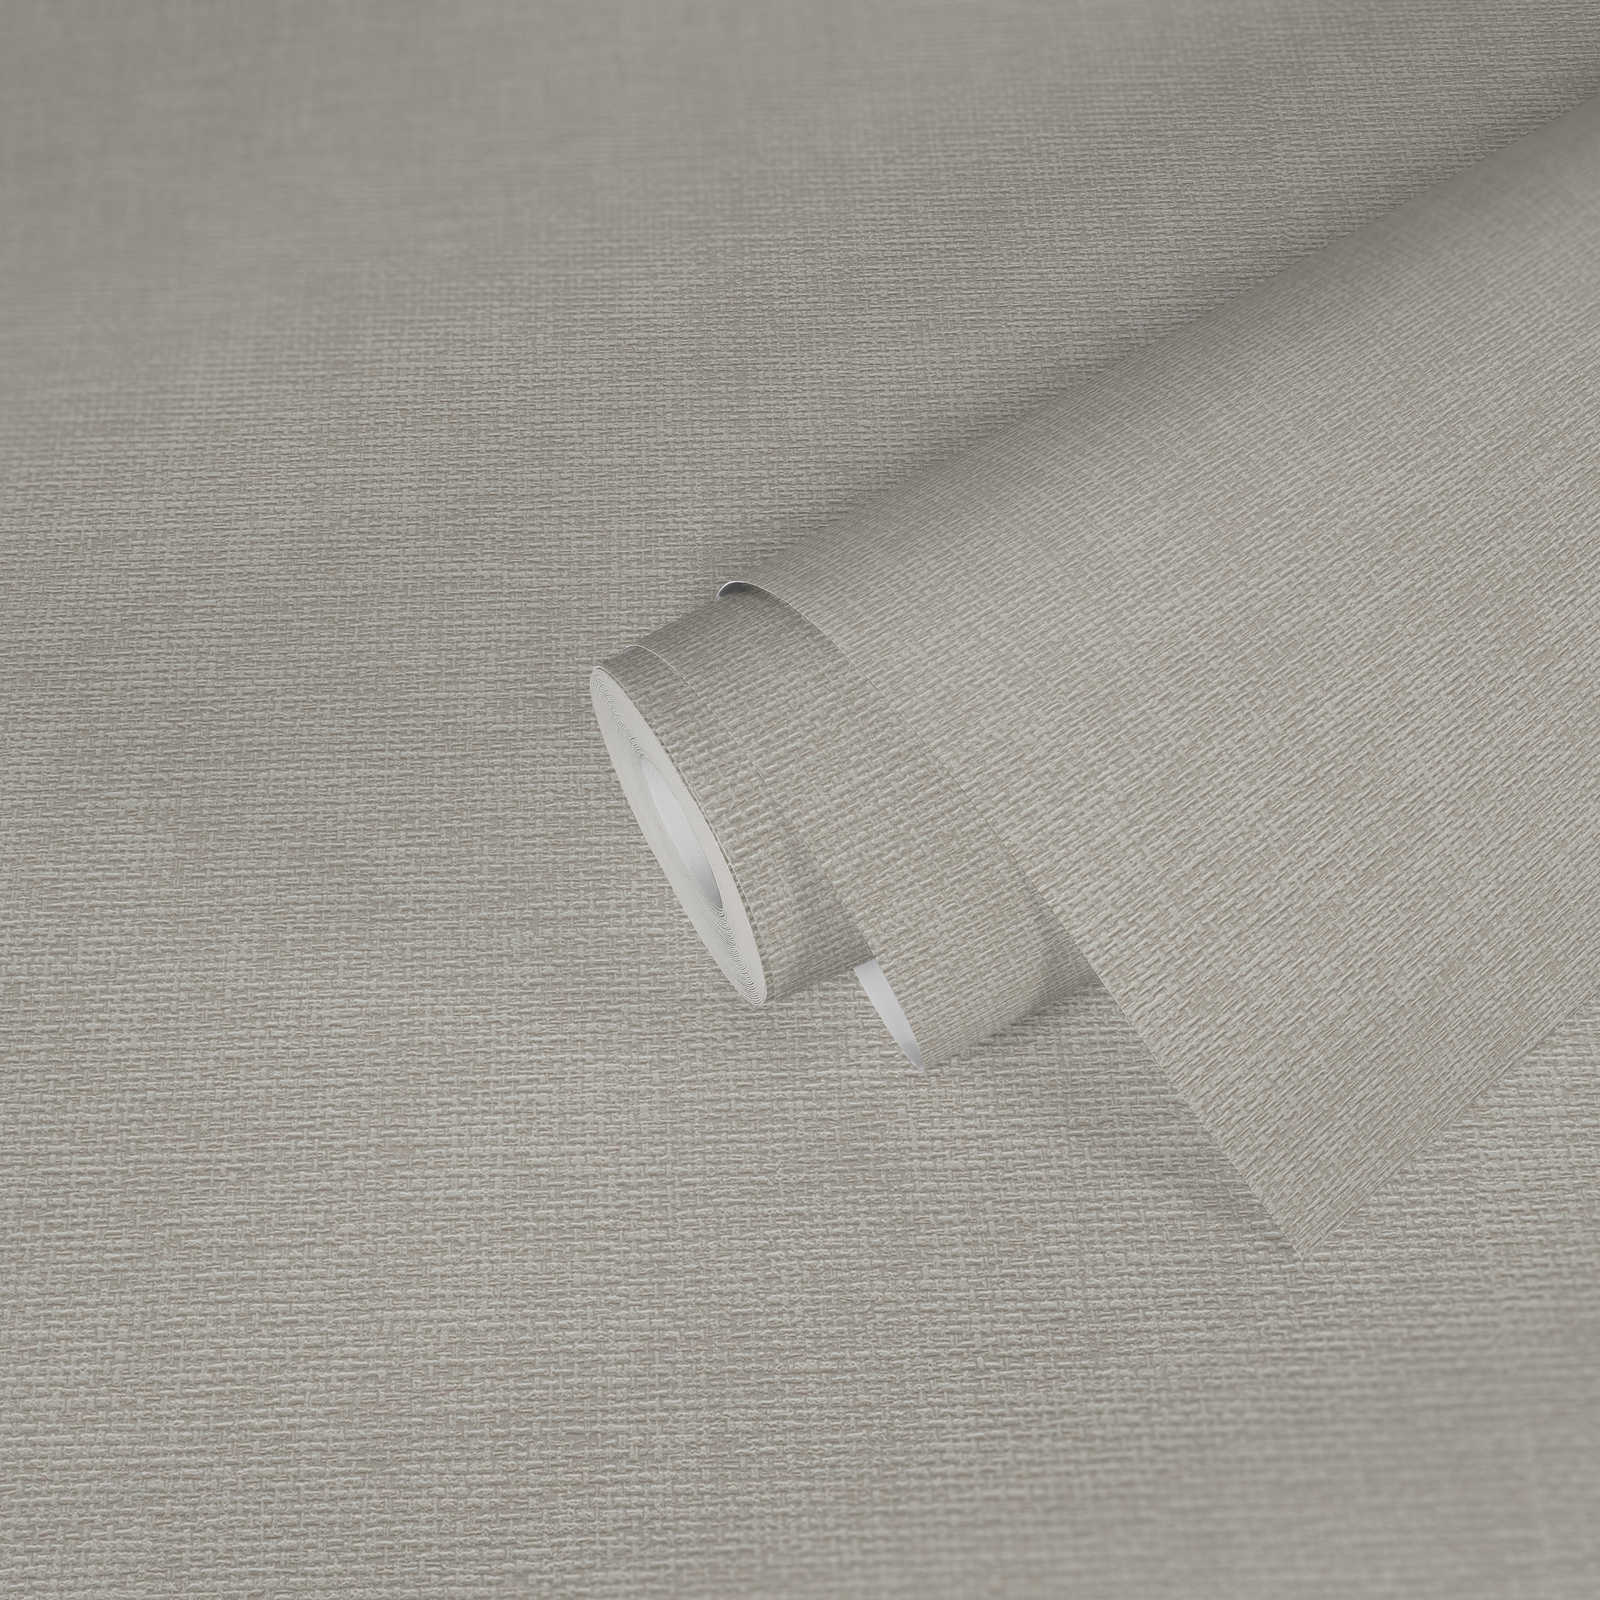             Textiel designbehang met stofstructuur - grijs
        